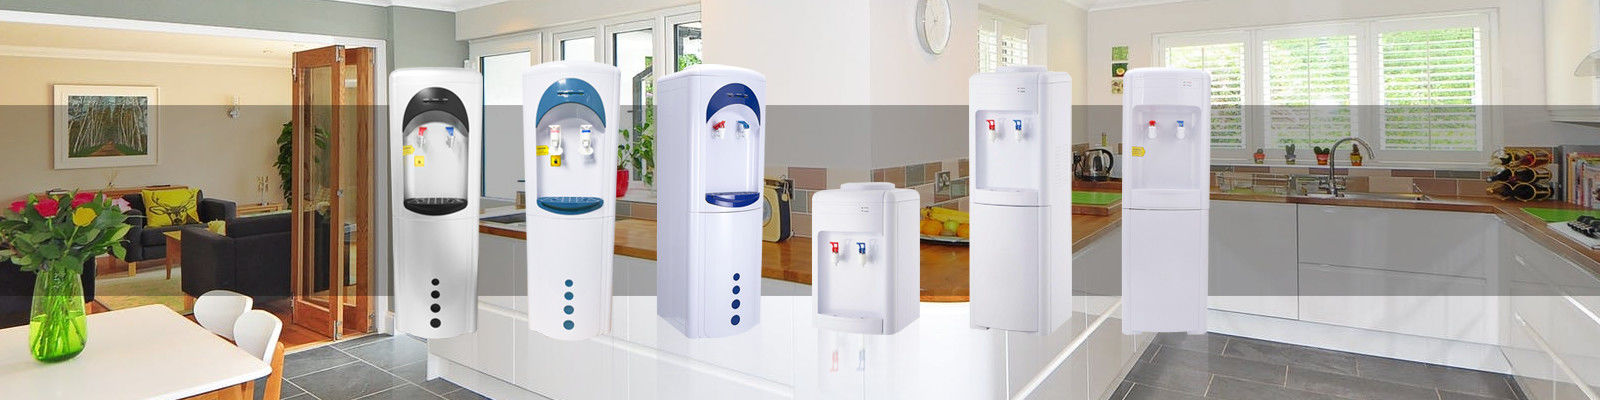 Free Standing 3 Tap Water Cooler Dispenser , Classic 5 Gallon Water Dispenser